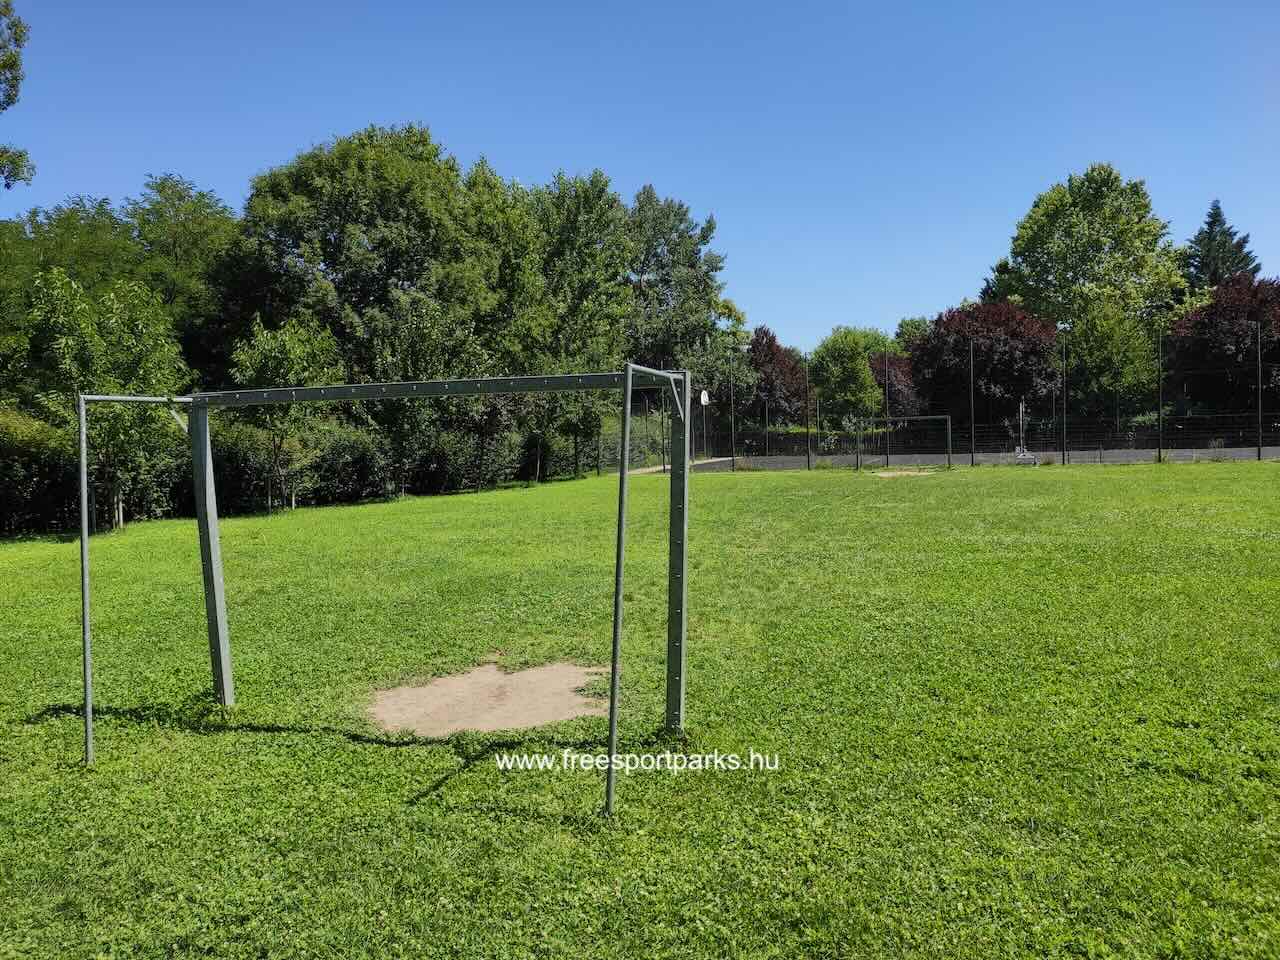 füves focipálya a Gladiátor utcai családi sportparkban Óbudán, Free Sport Parks térkép